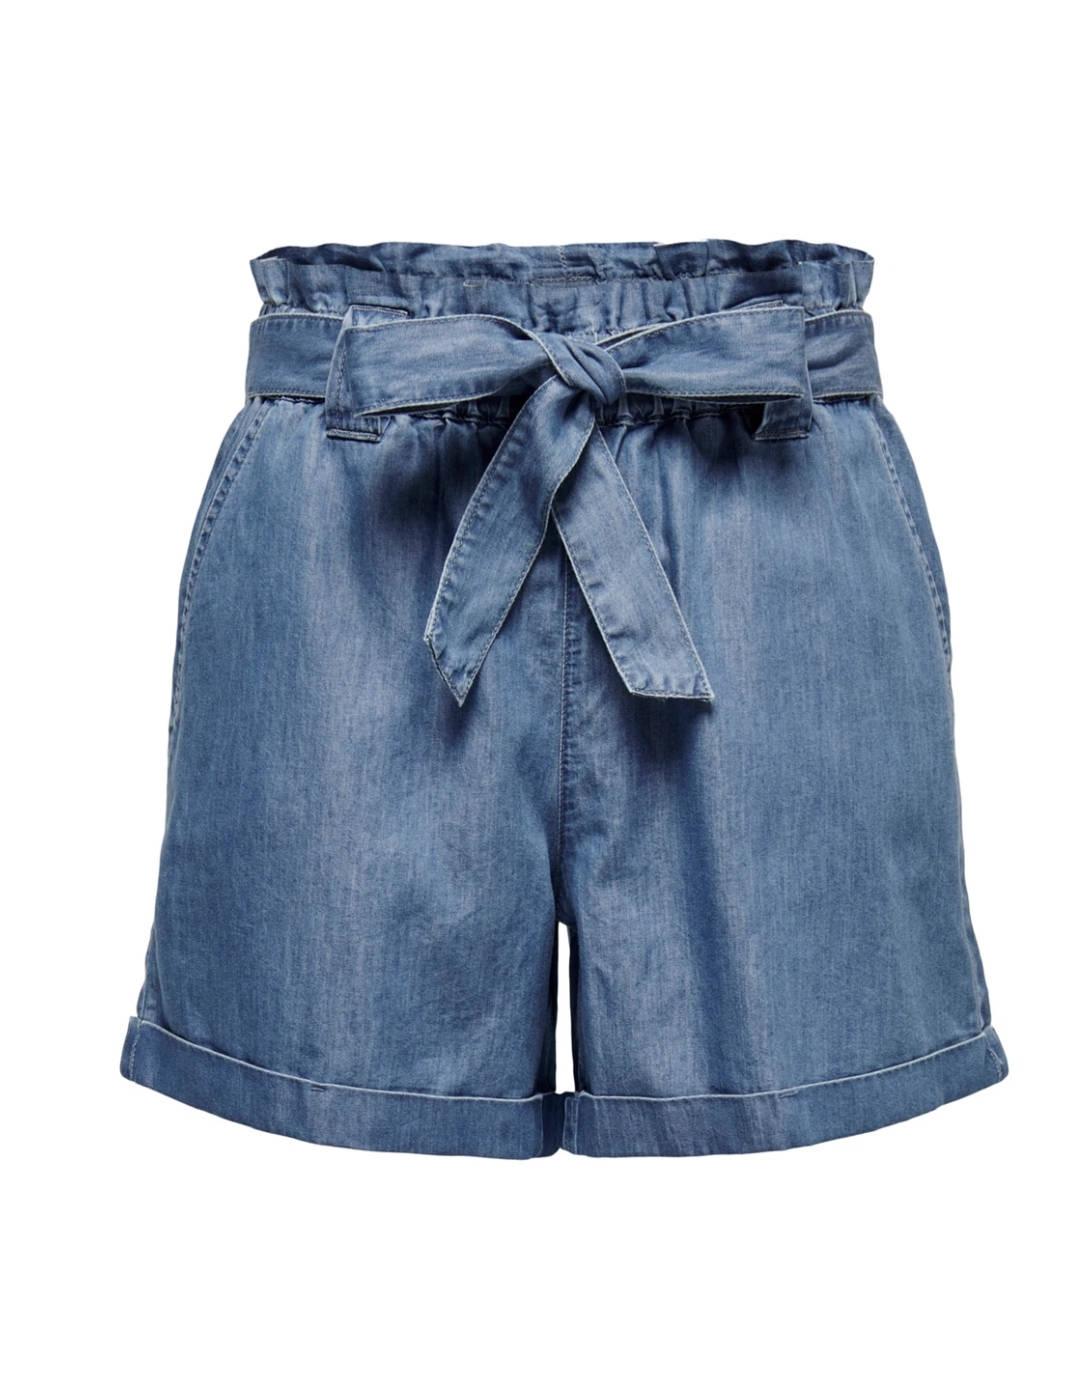 Shorts Only Bea azul jaspeado cintura con goma elastica